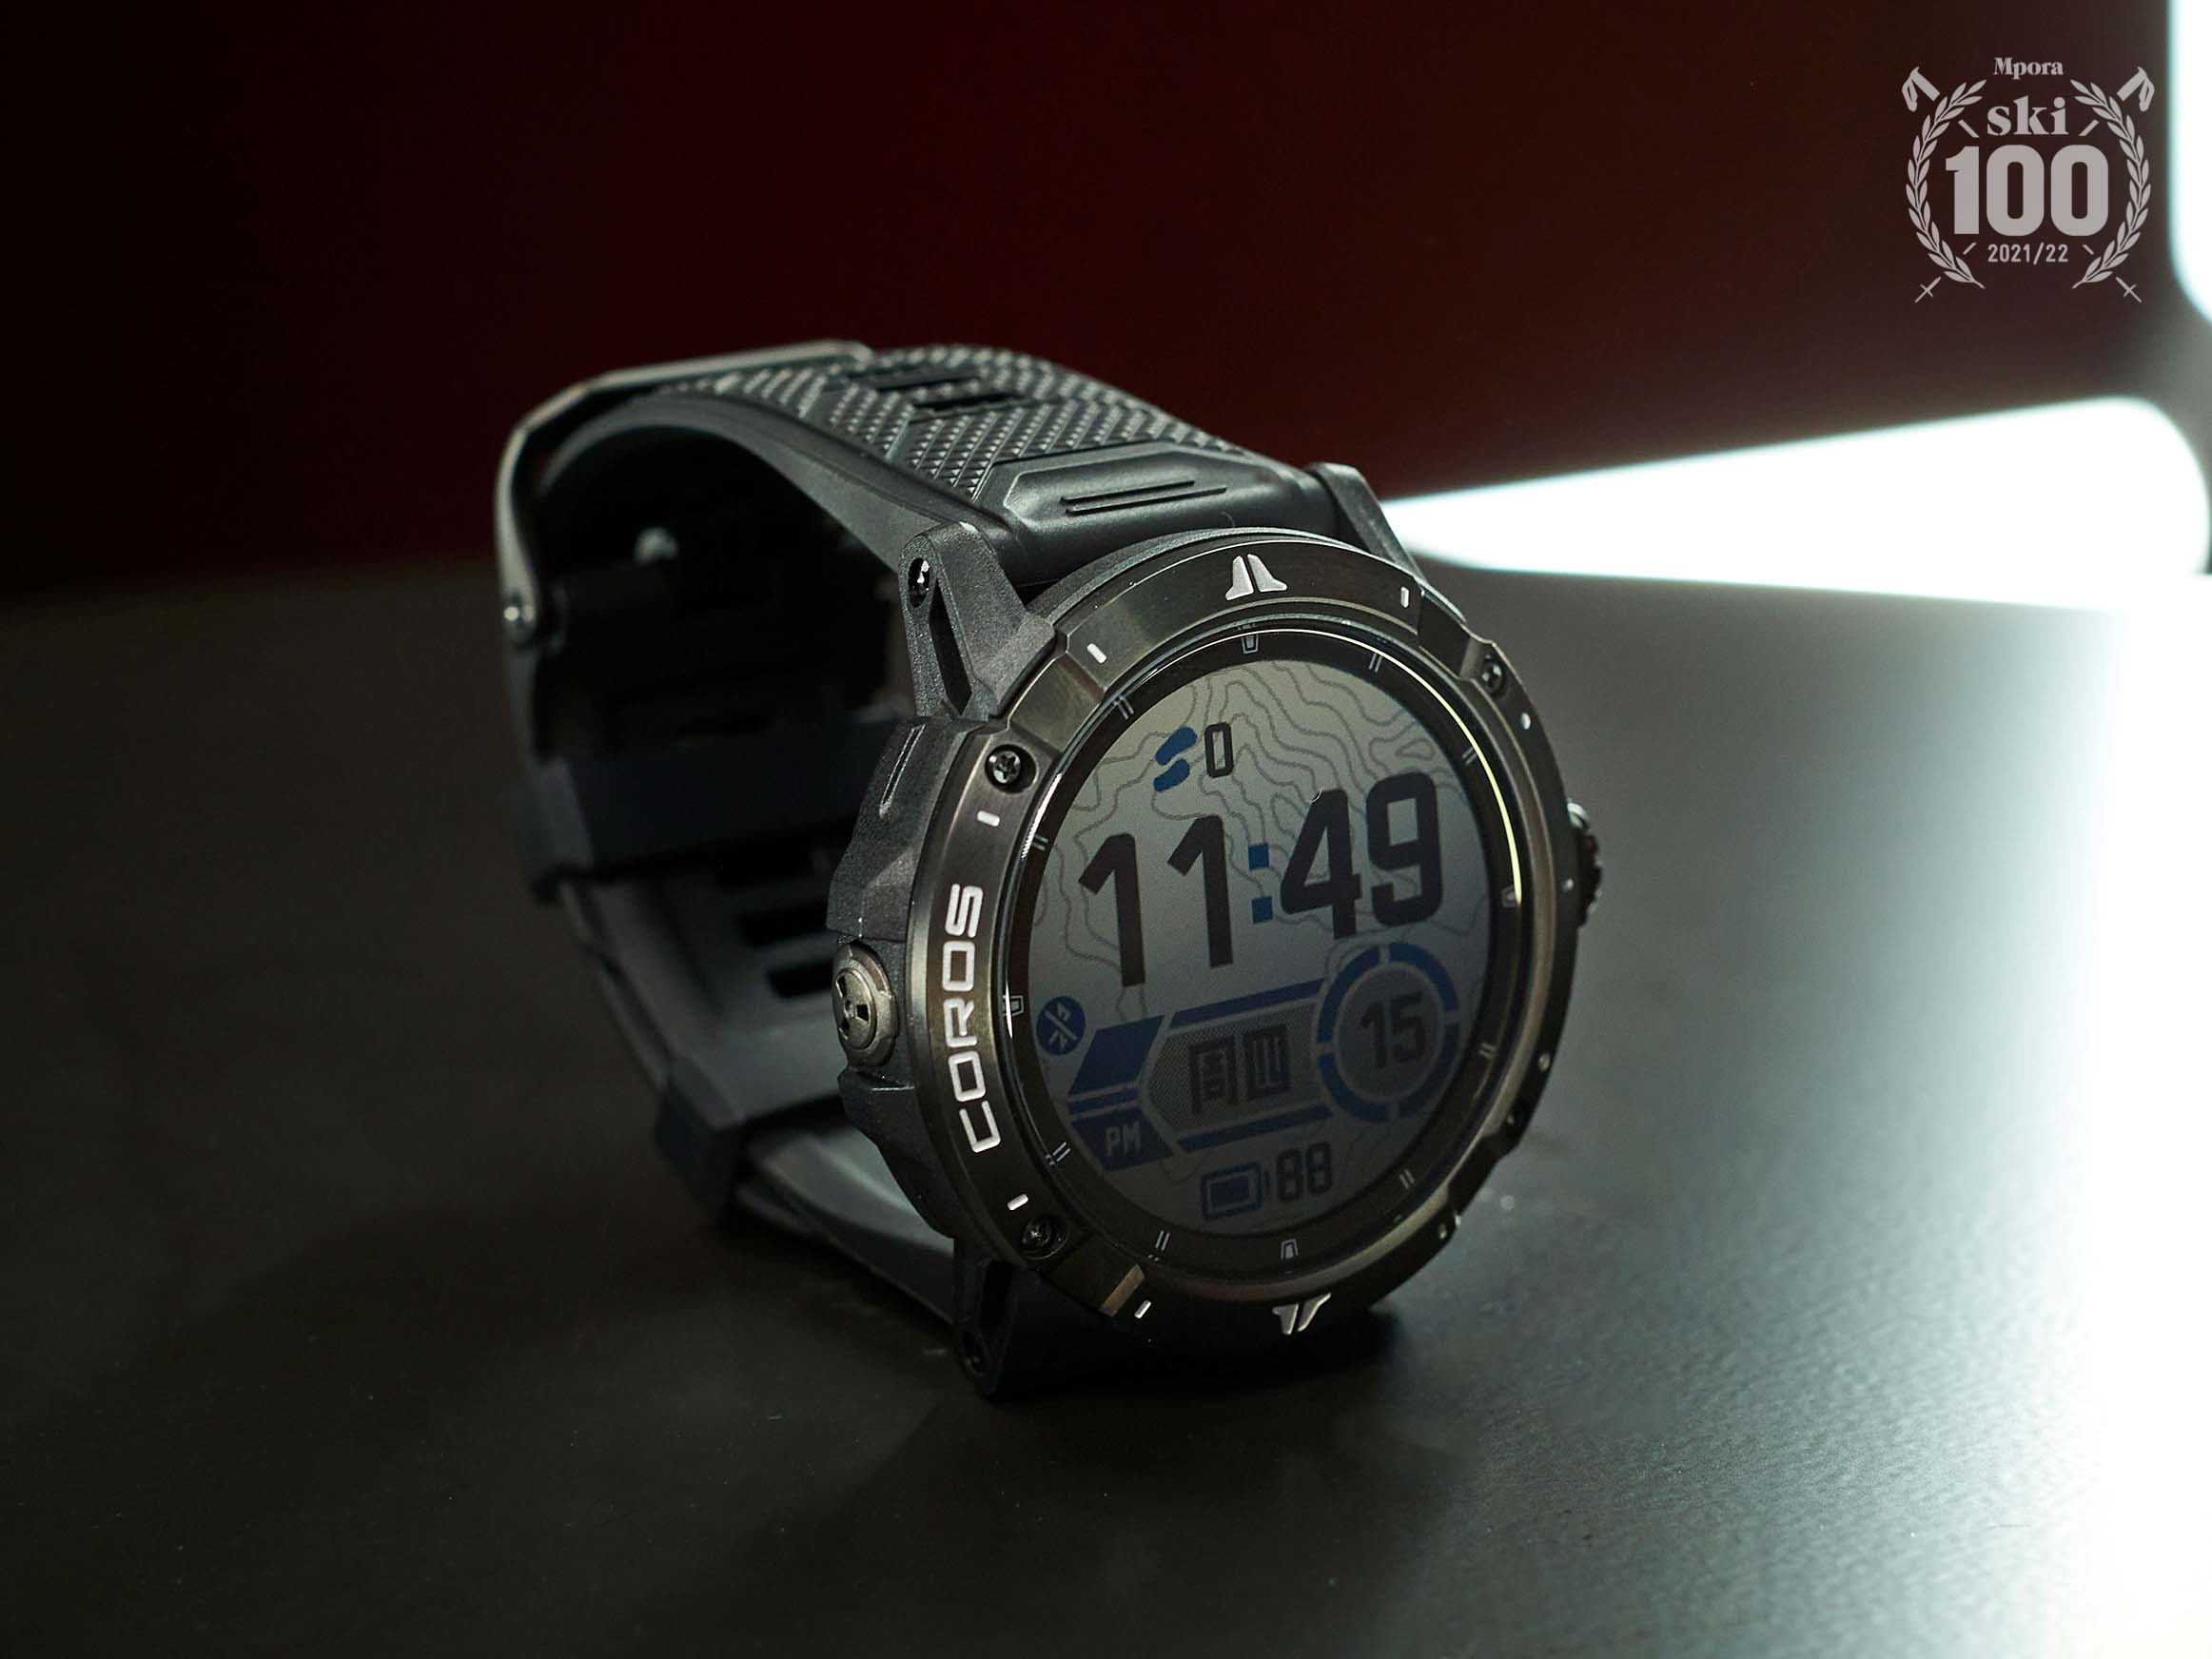 Coros-vertix-2-smartwatch-review-2